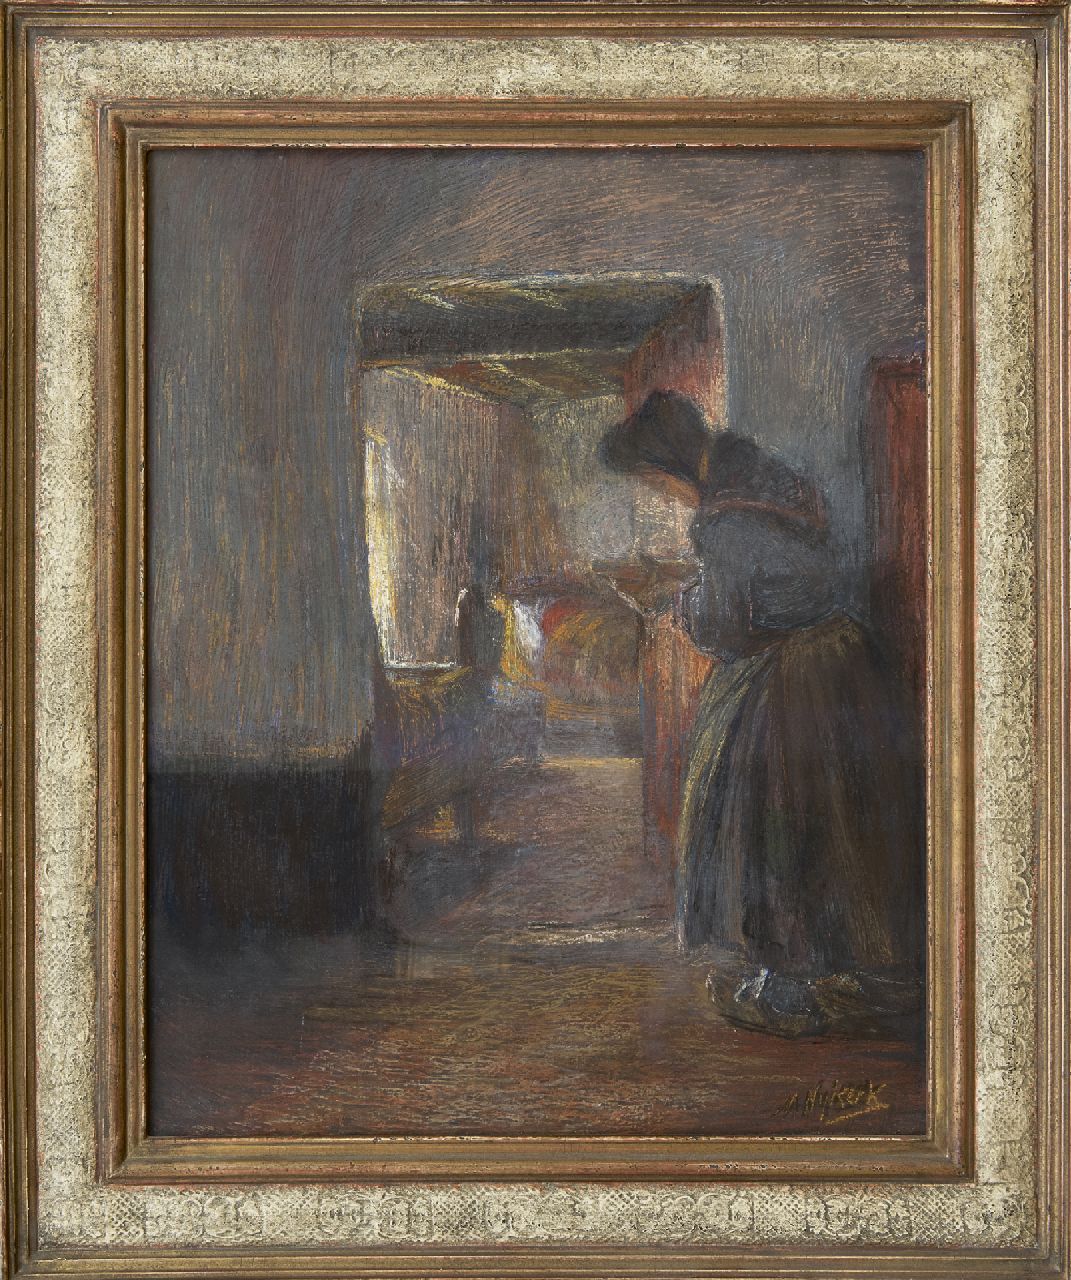 Niekerk M.J.  | 'Maurits' Joseph Niekerk, Goede zorgen, pastel en olieverf op doek 55,4 x 43,3 cm, gesigneerd rechtsonder